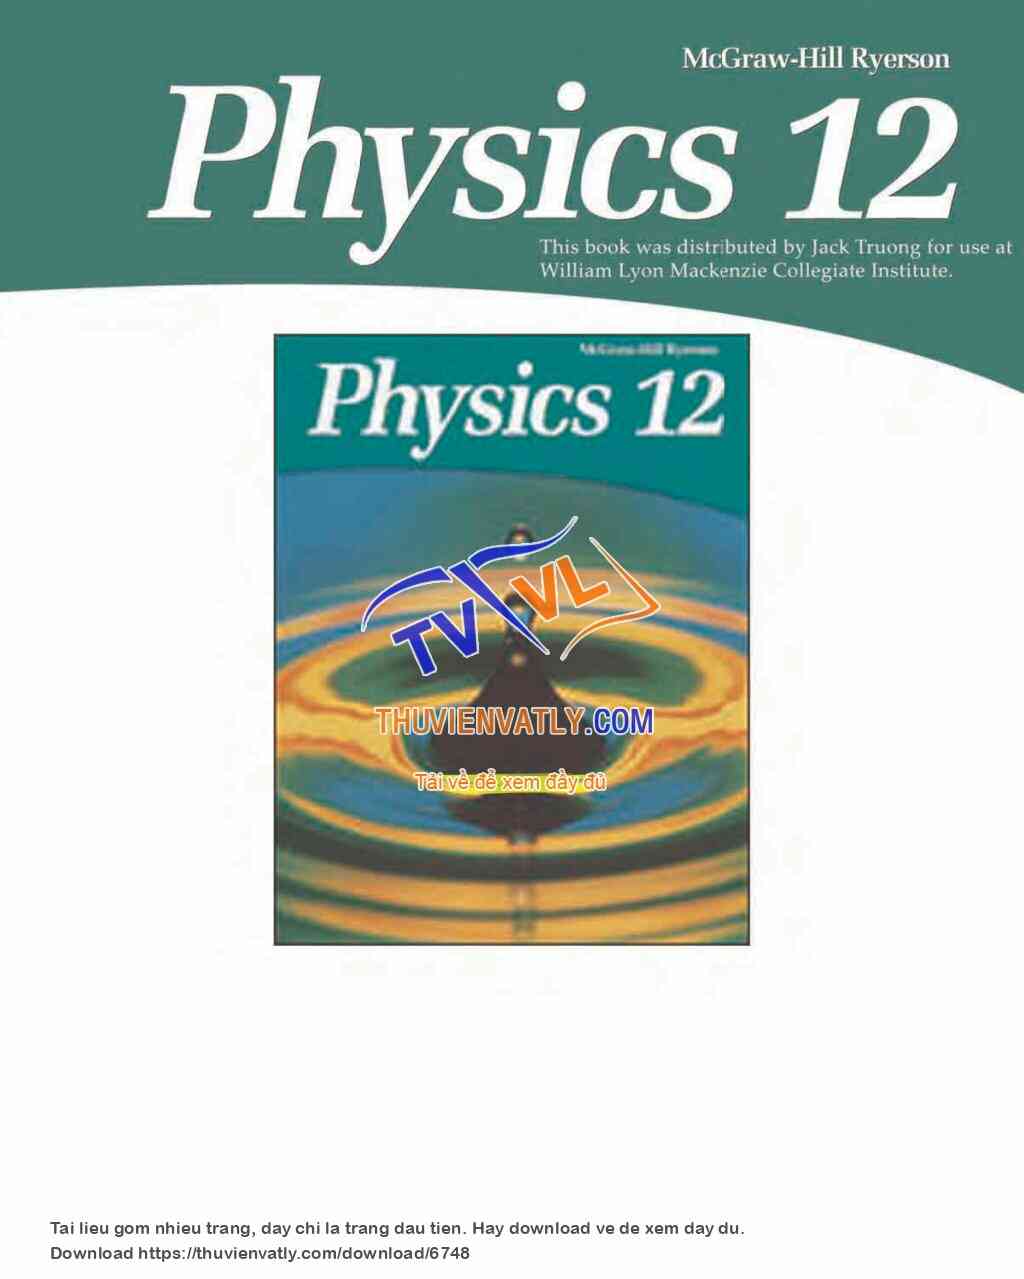 Tham khảo 1 bộ SGK VL của Mĩ: Physics 12 (McGraw Hill Ryerson)